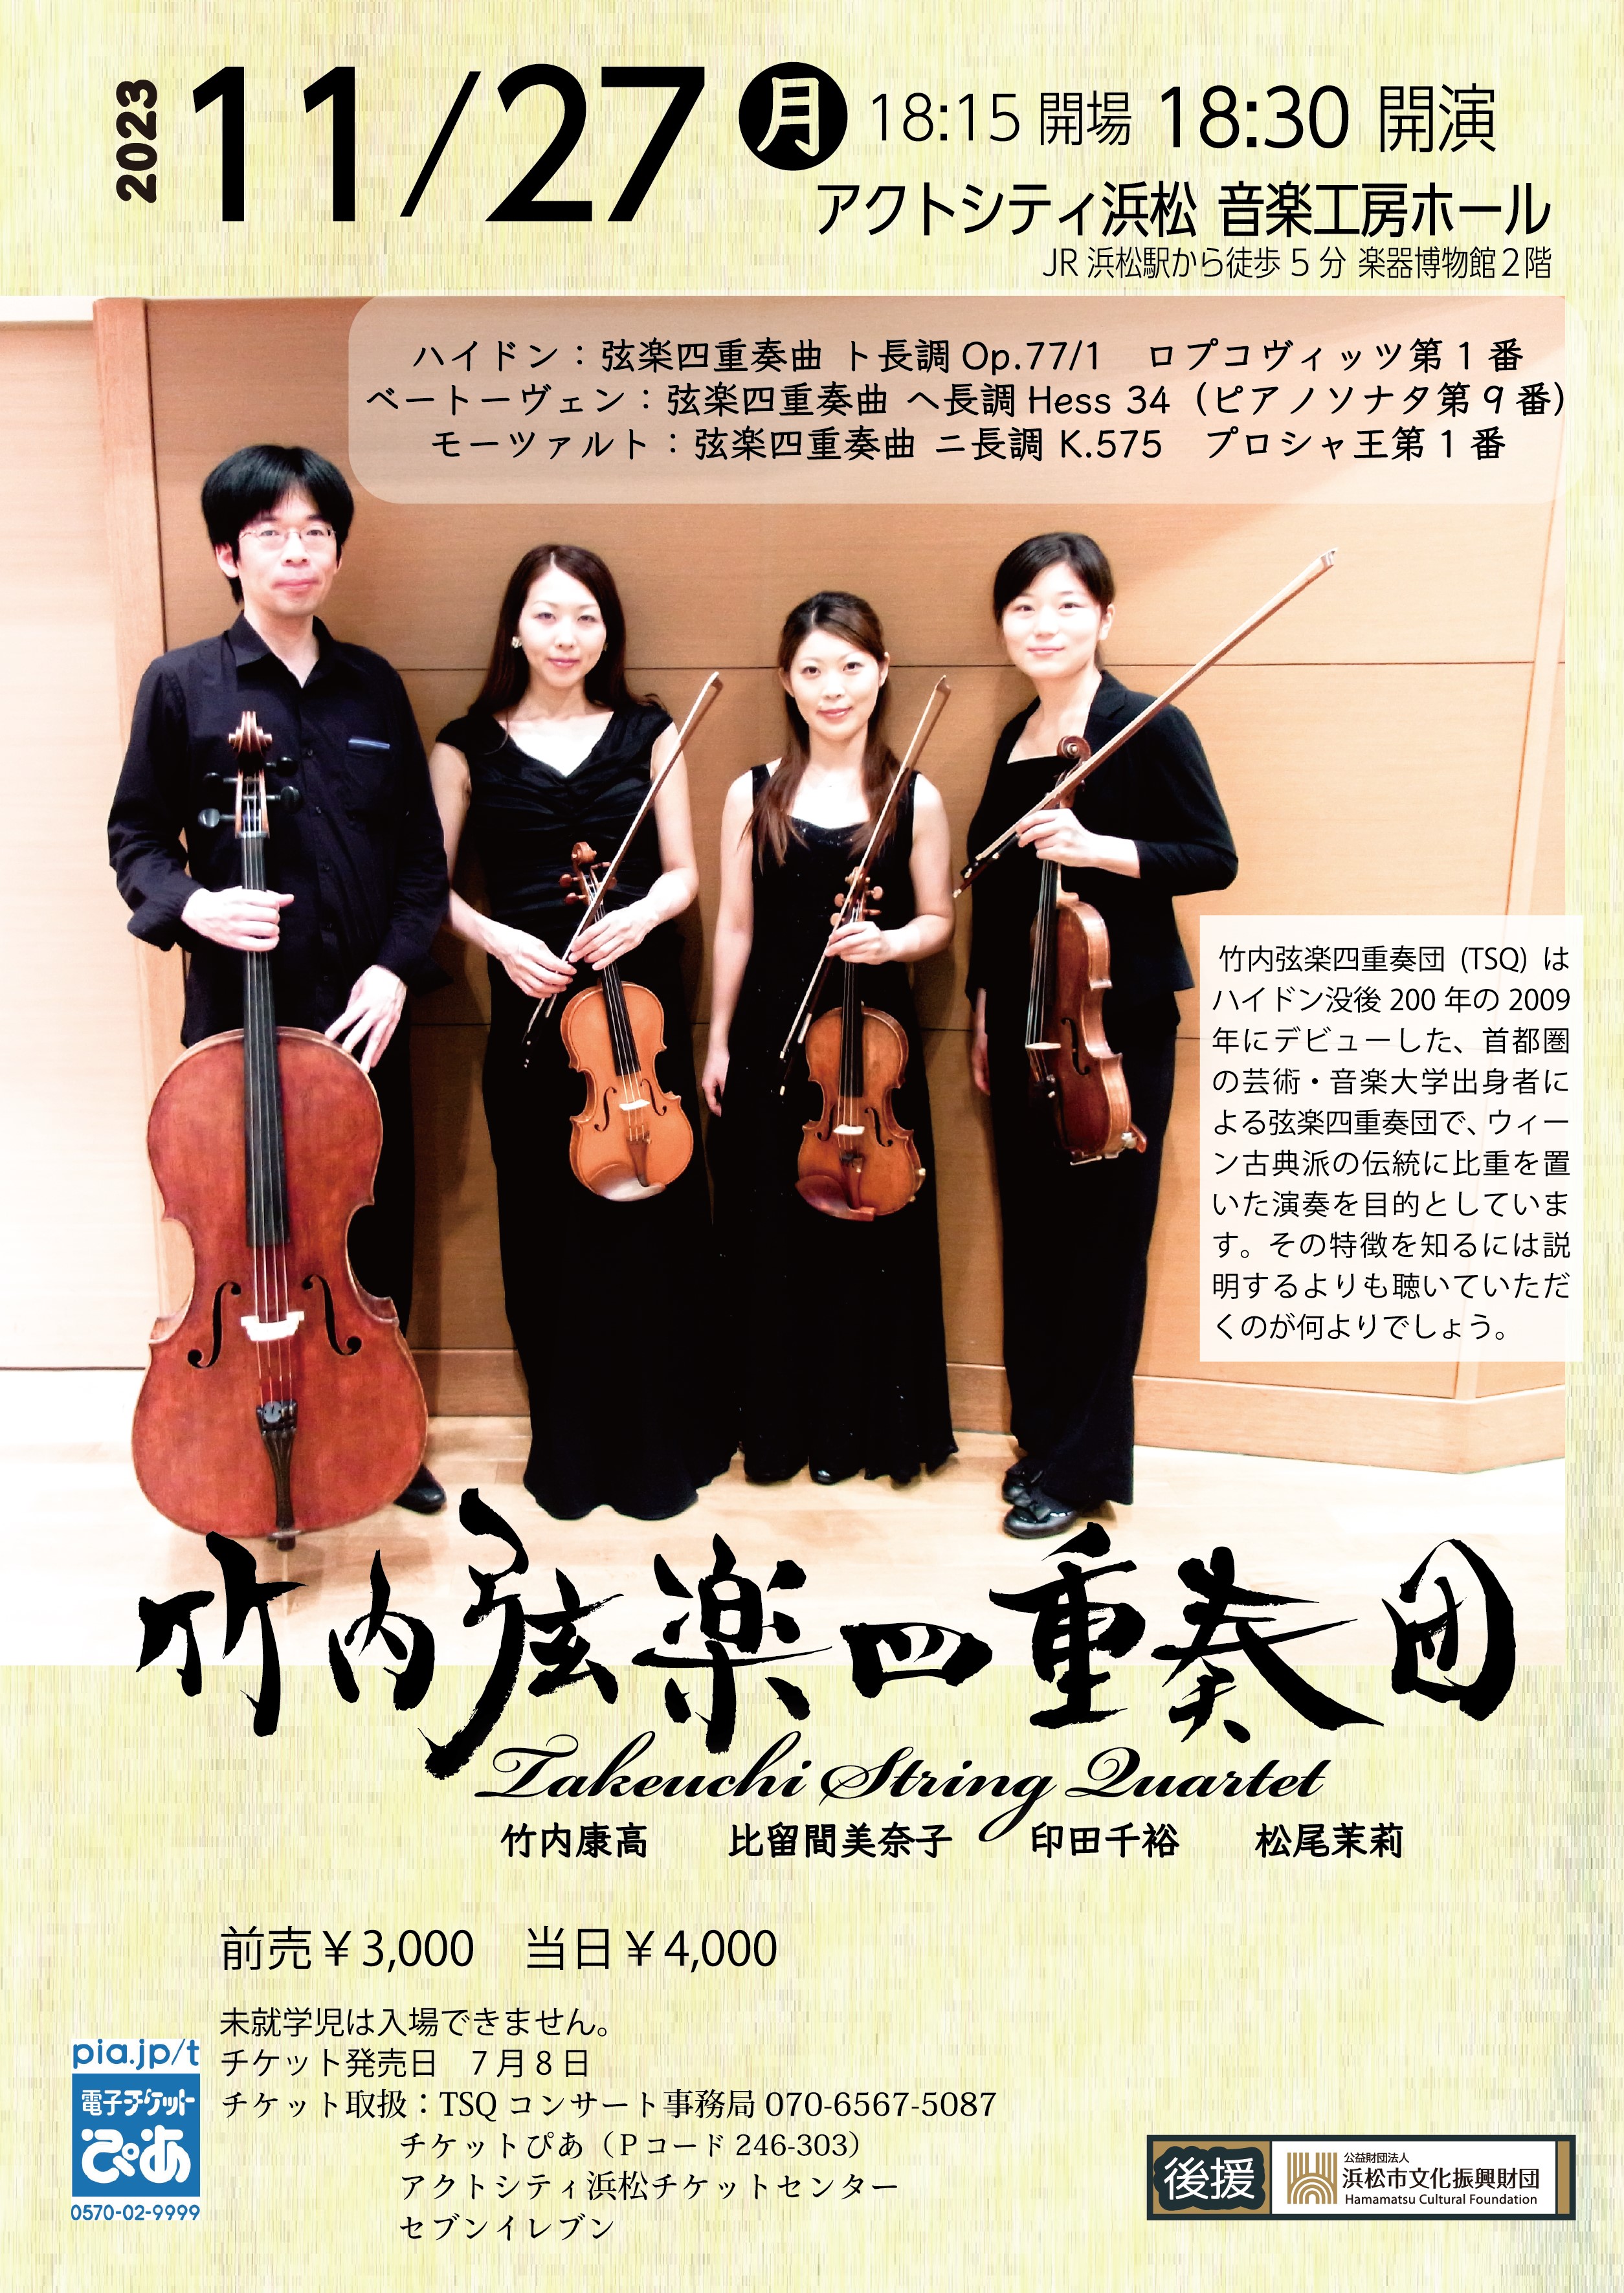 竹内弦楽四重奏団 (TSQ, Takeuchi String Quartet)ホームページ